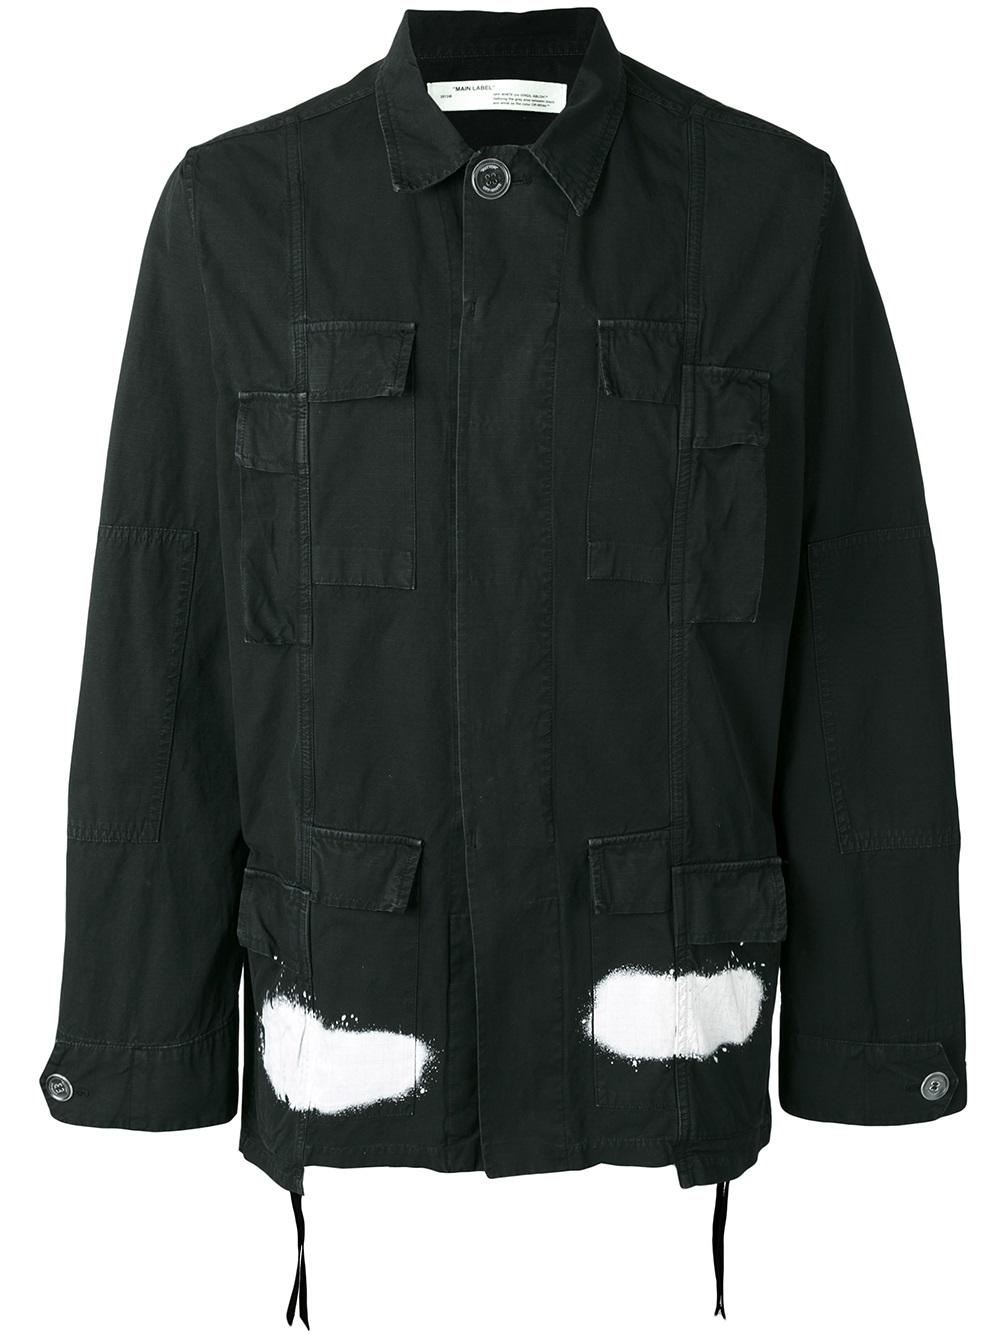 Off-White diagonal stripes cargo jacket 1001 BLACK WHITE Men Clothing Military Jackets